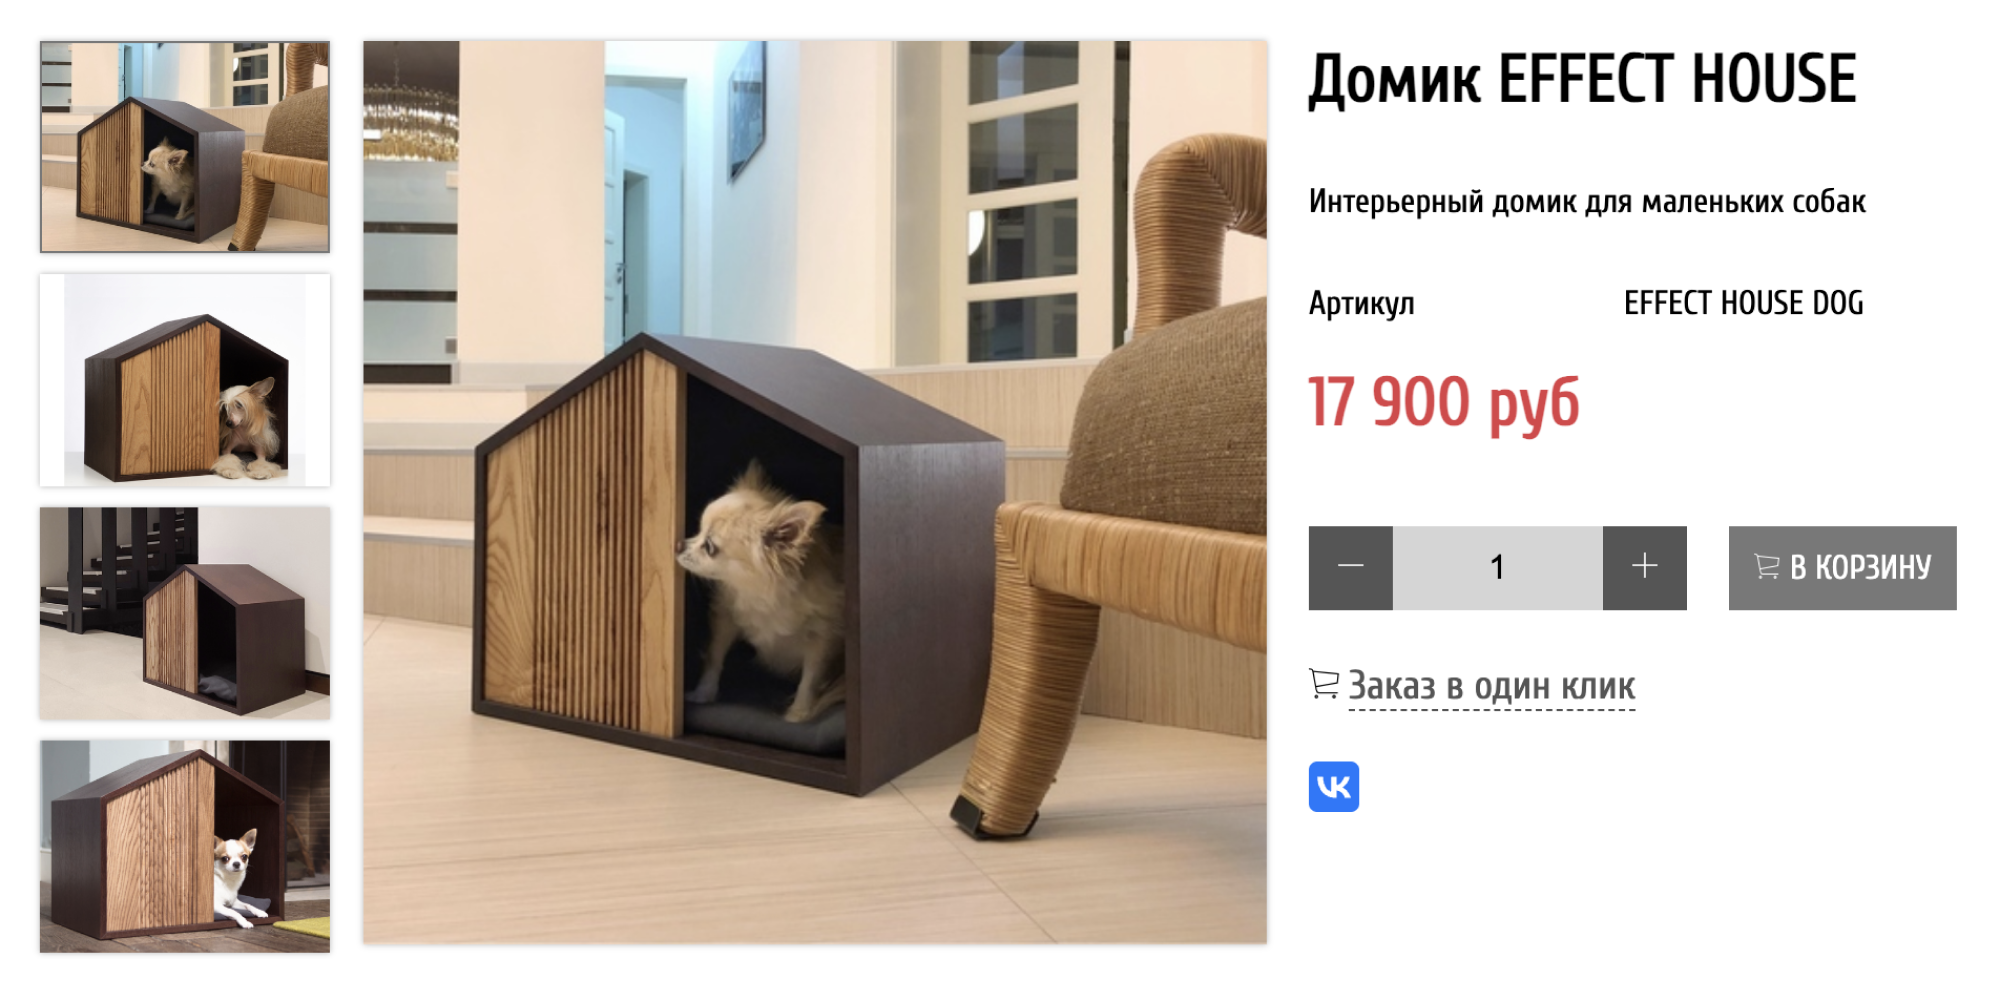 А вот домик с минималистичными полосками на фасаде впишется почти в любое помещение. Источник: pettel.ru